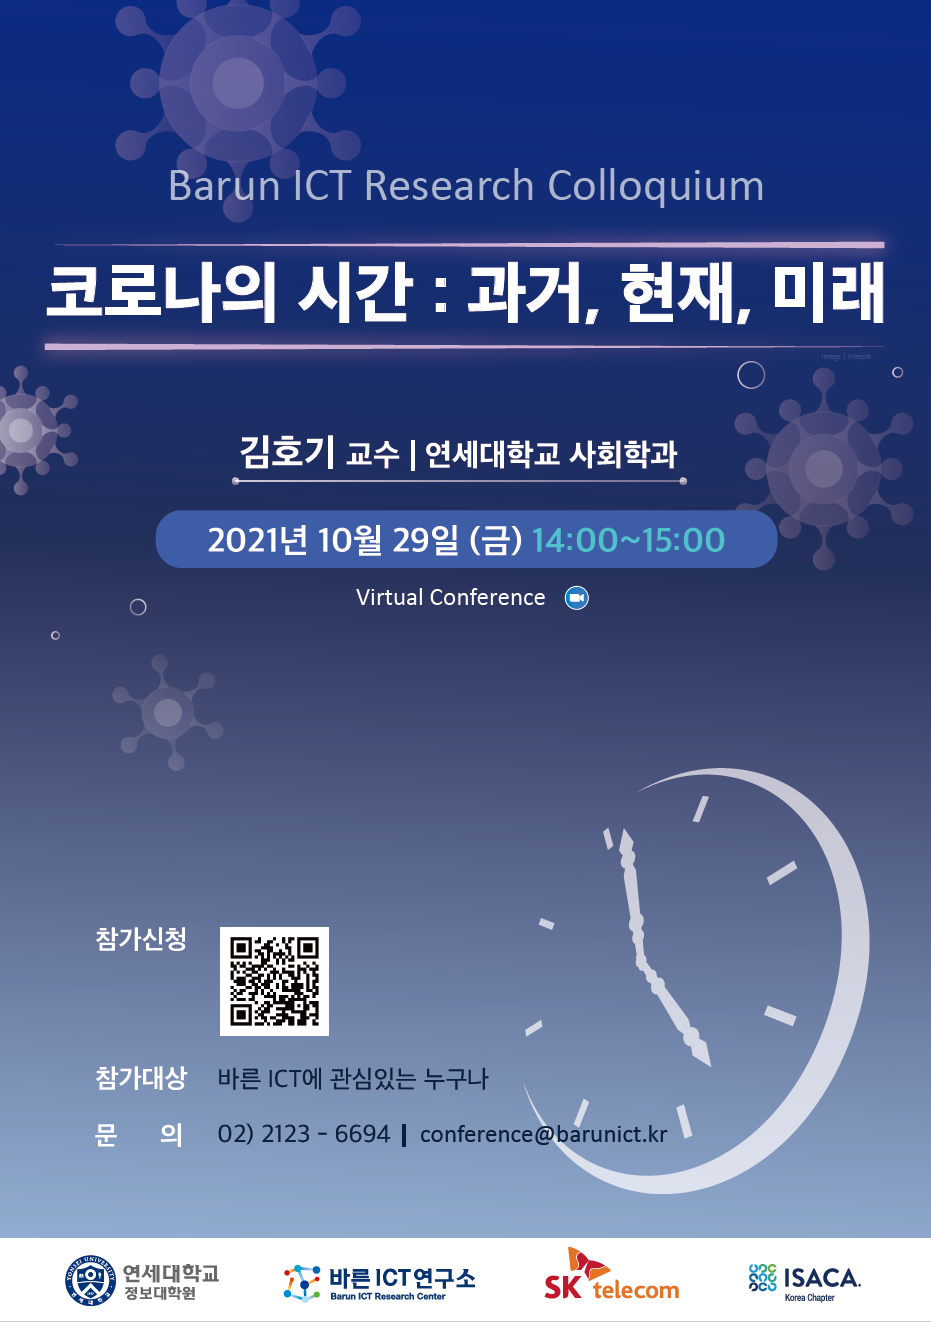 Barun ICT Research Colloquium 10월 29일 (금) 14:00~